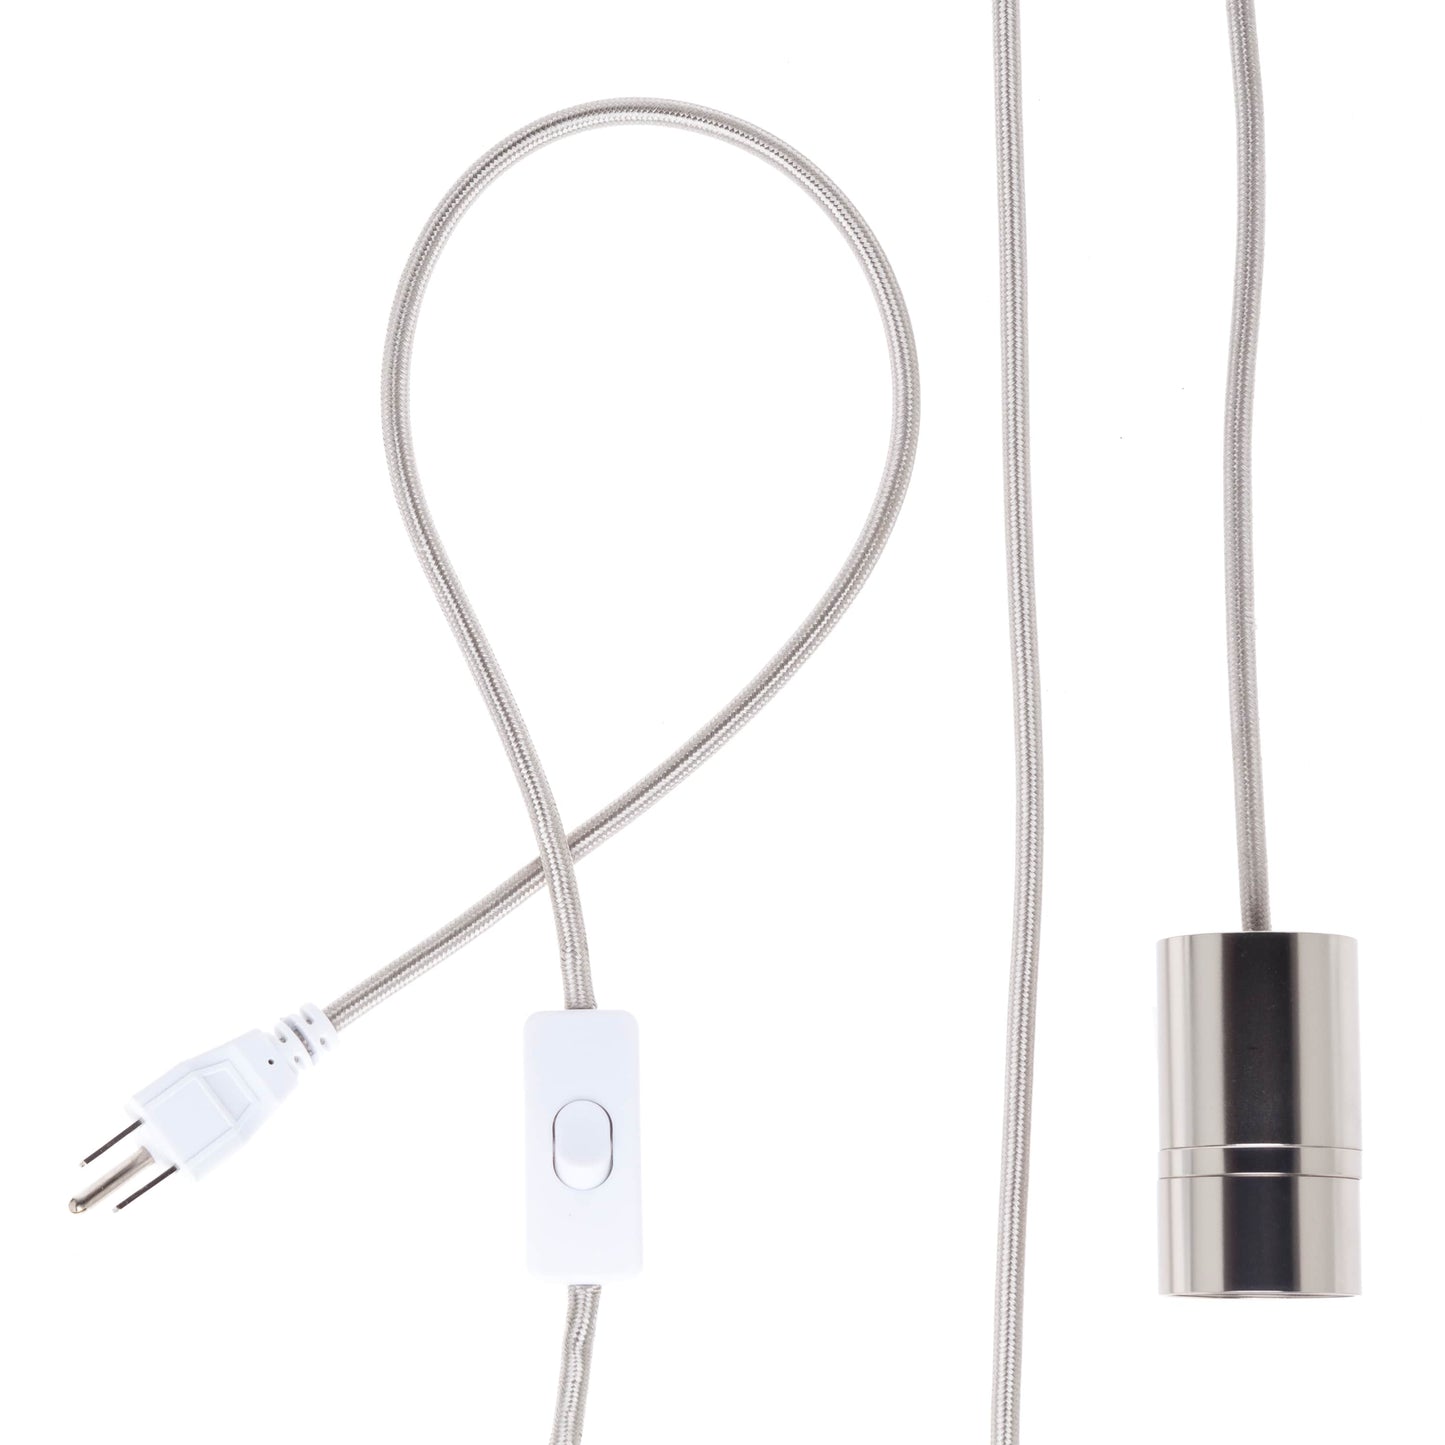 AiO Core Plug-In Cord Set